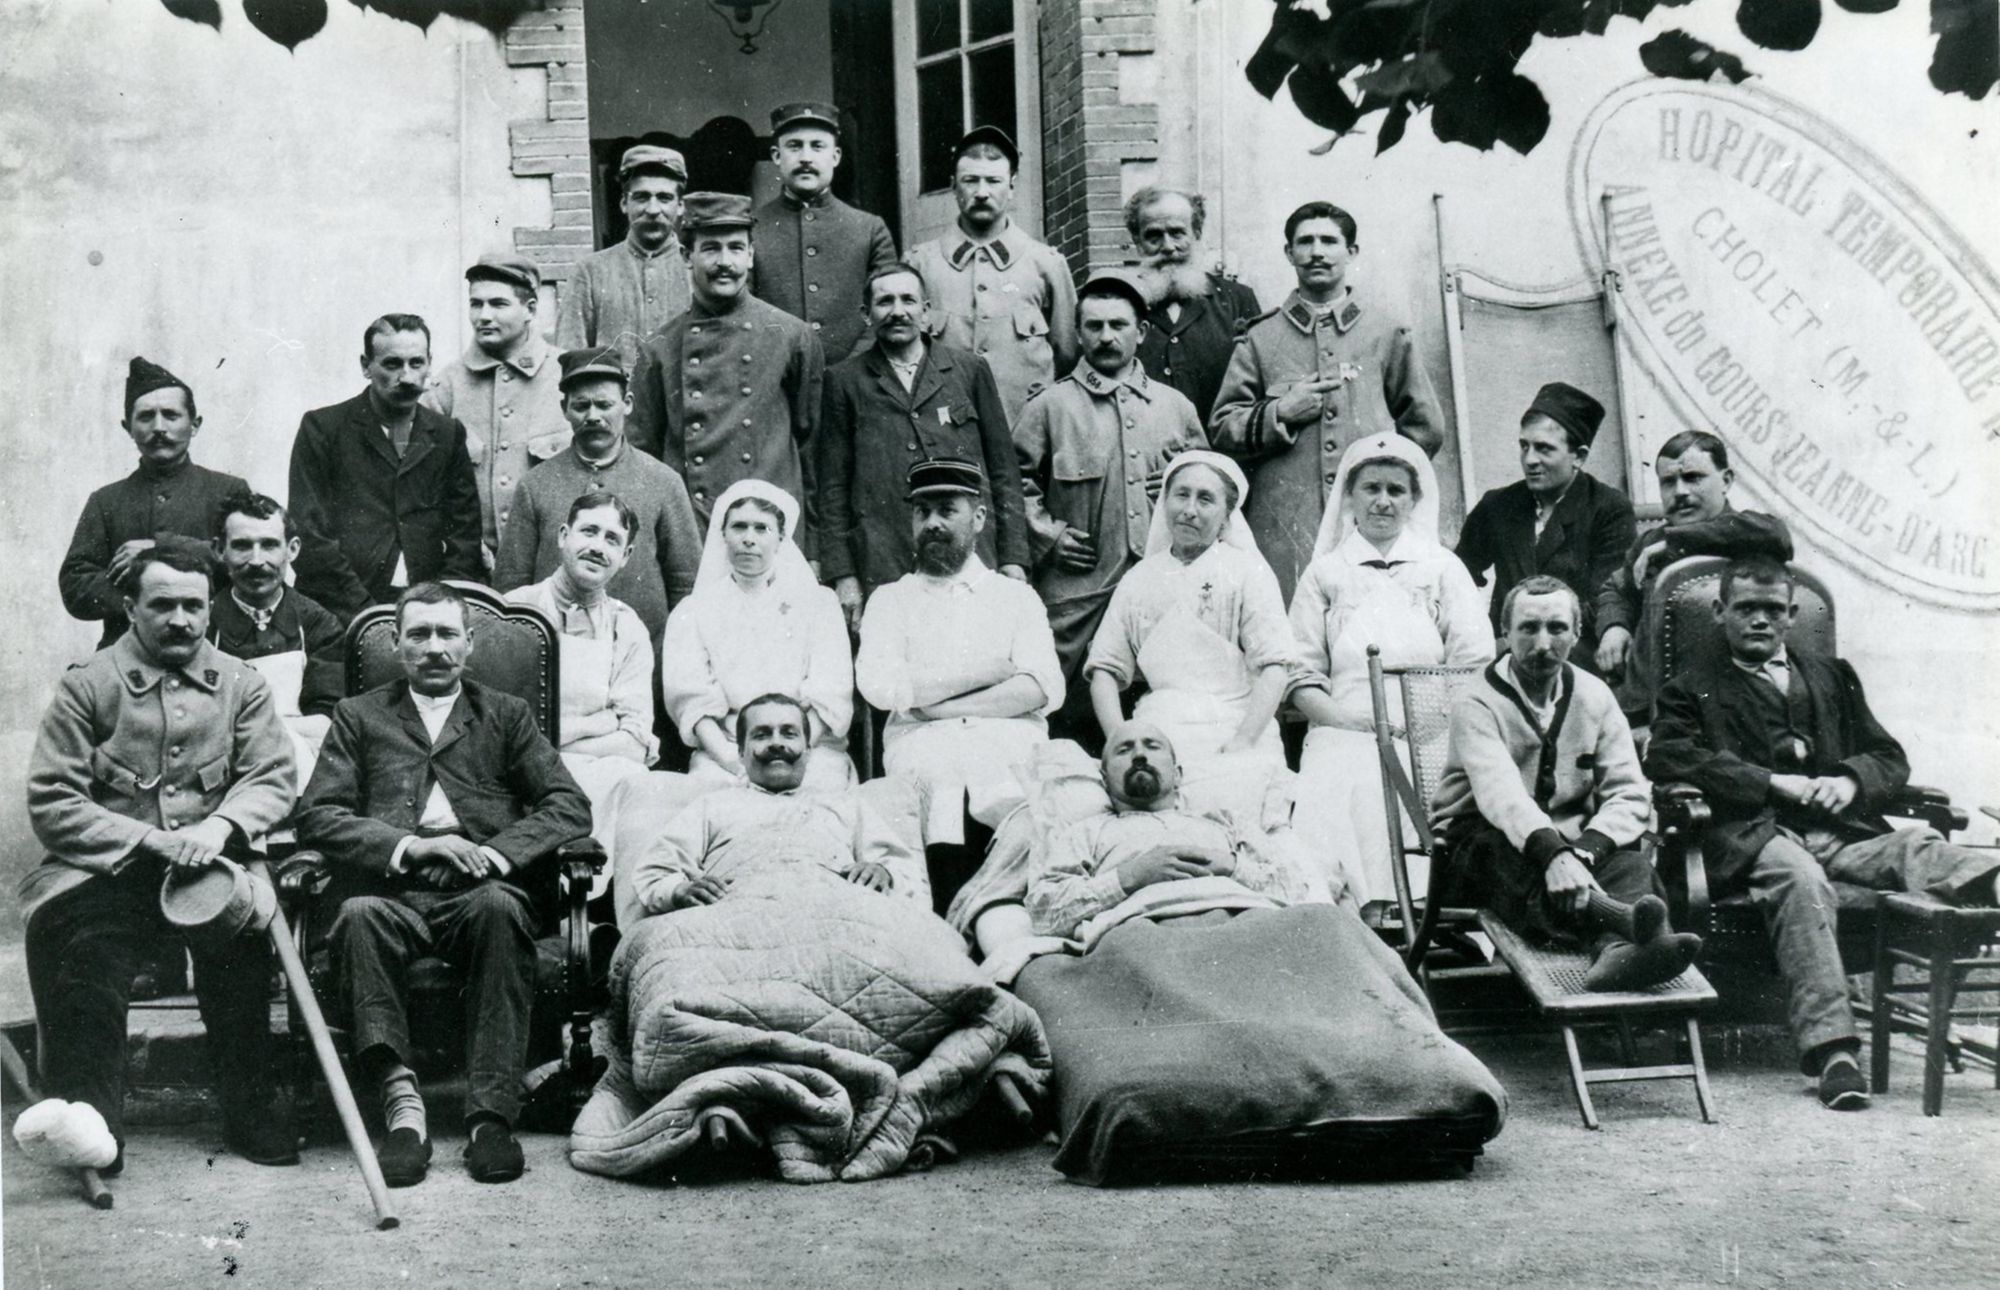 21Fi382 - Hôpital temporaire Jeanne d'Arc, 1915